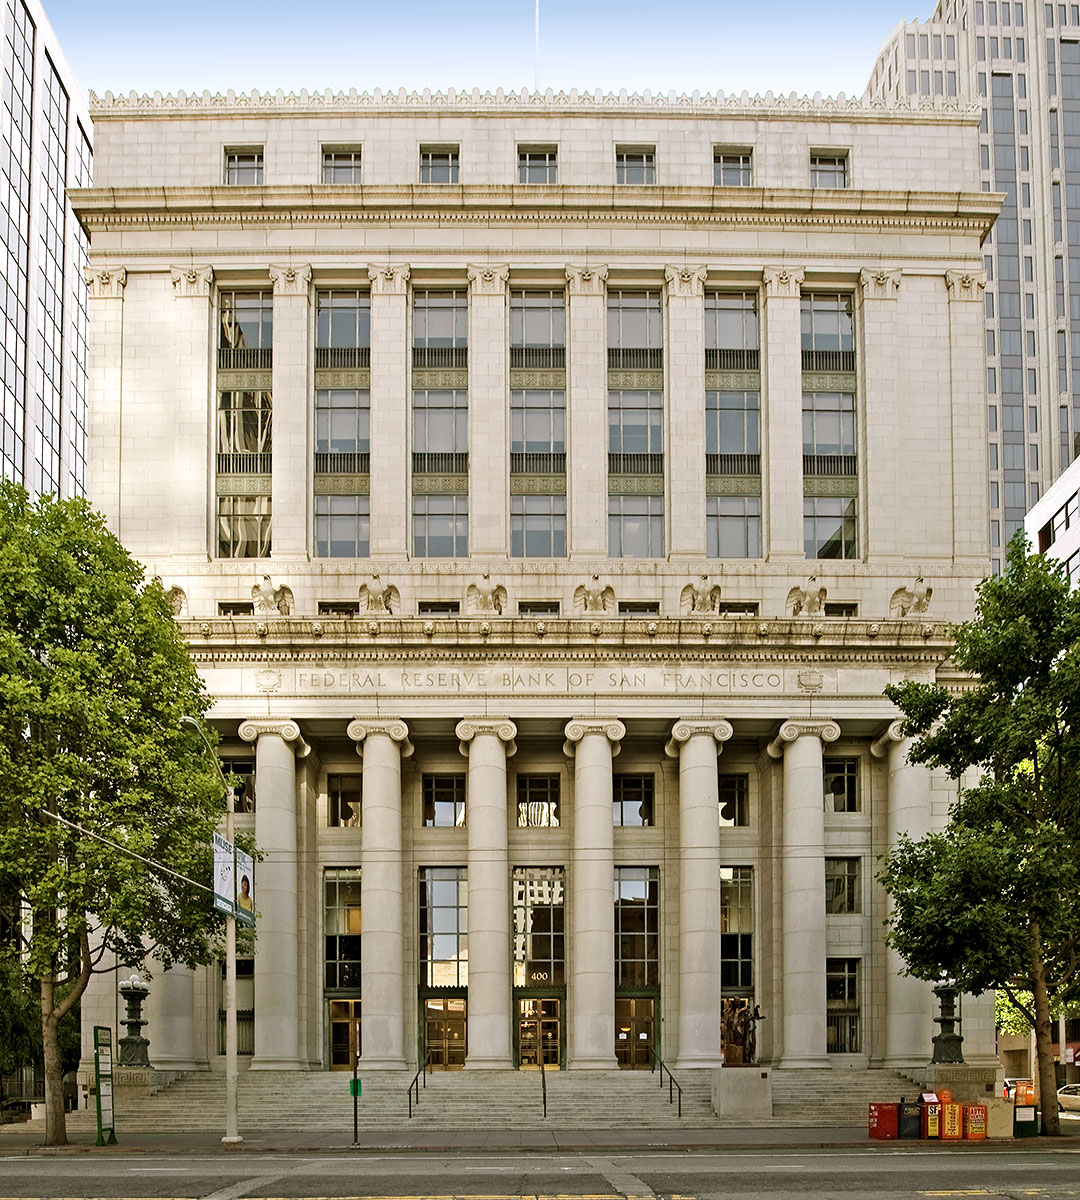 San Francisco Landmark 158: Old Federal Reserve Bank